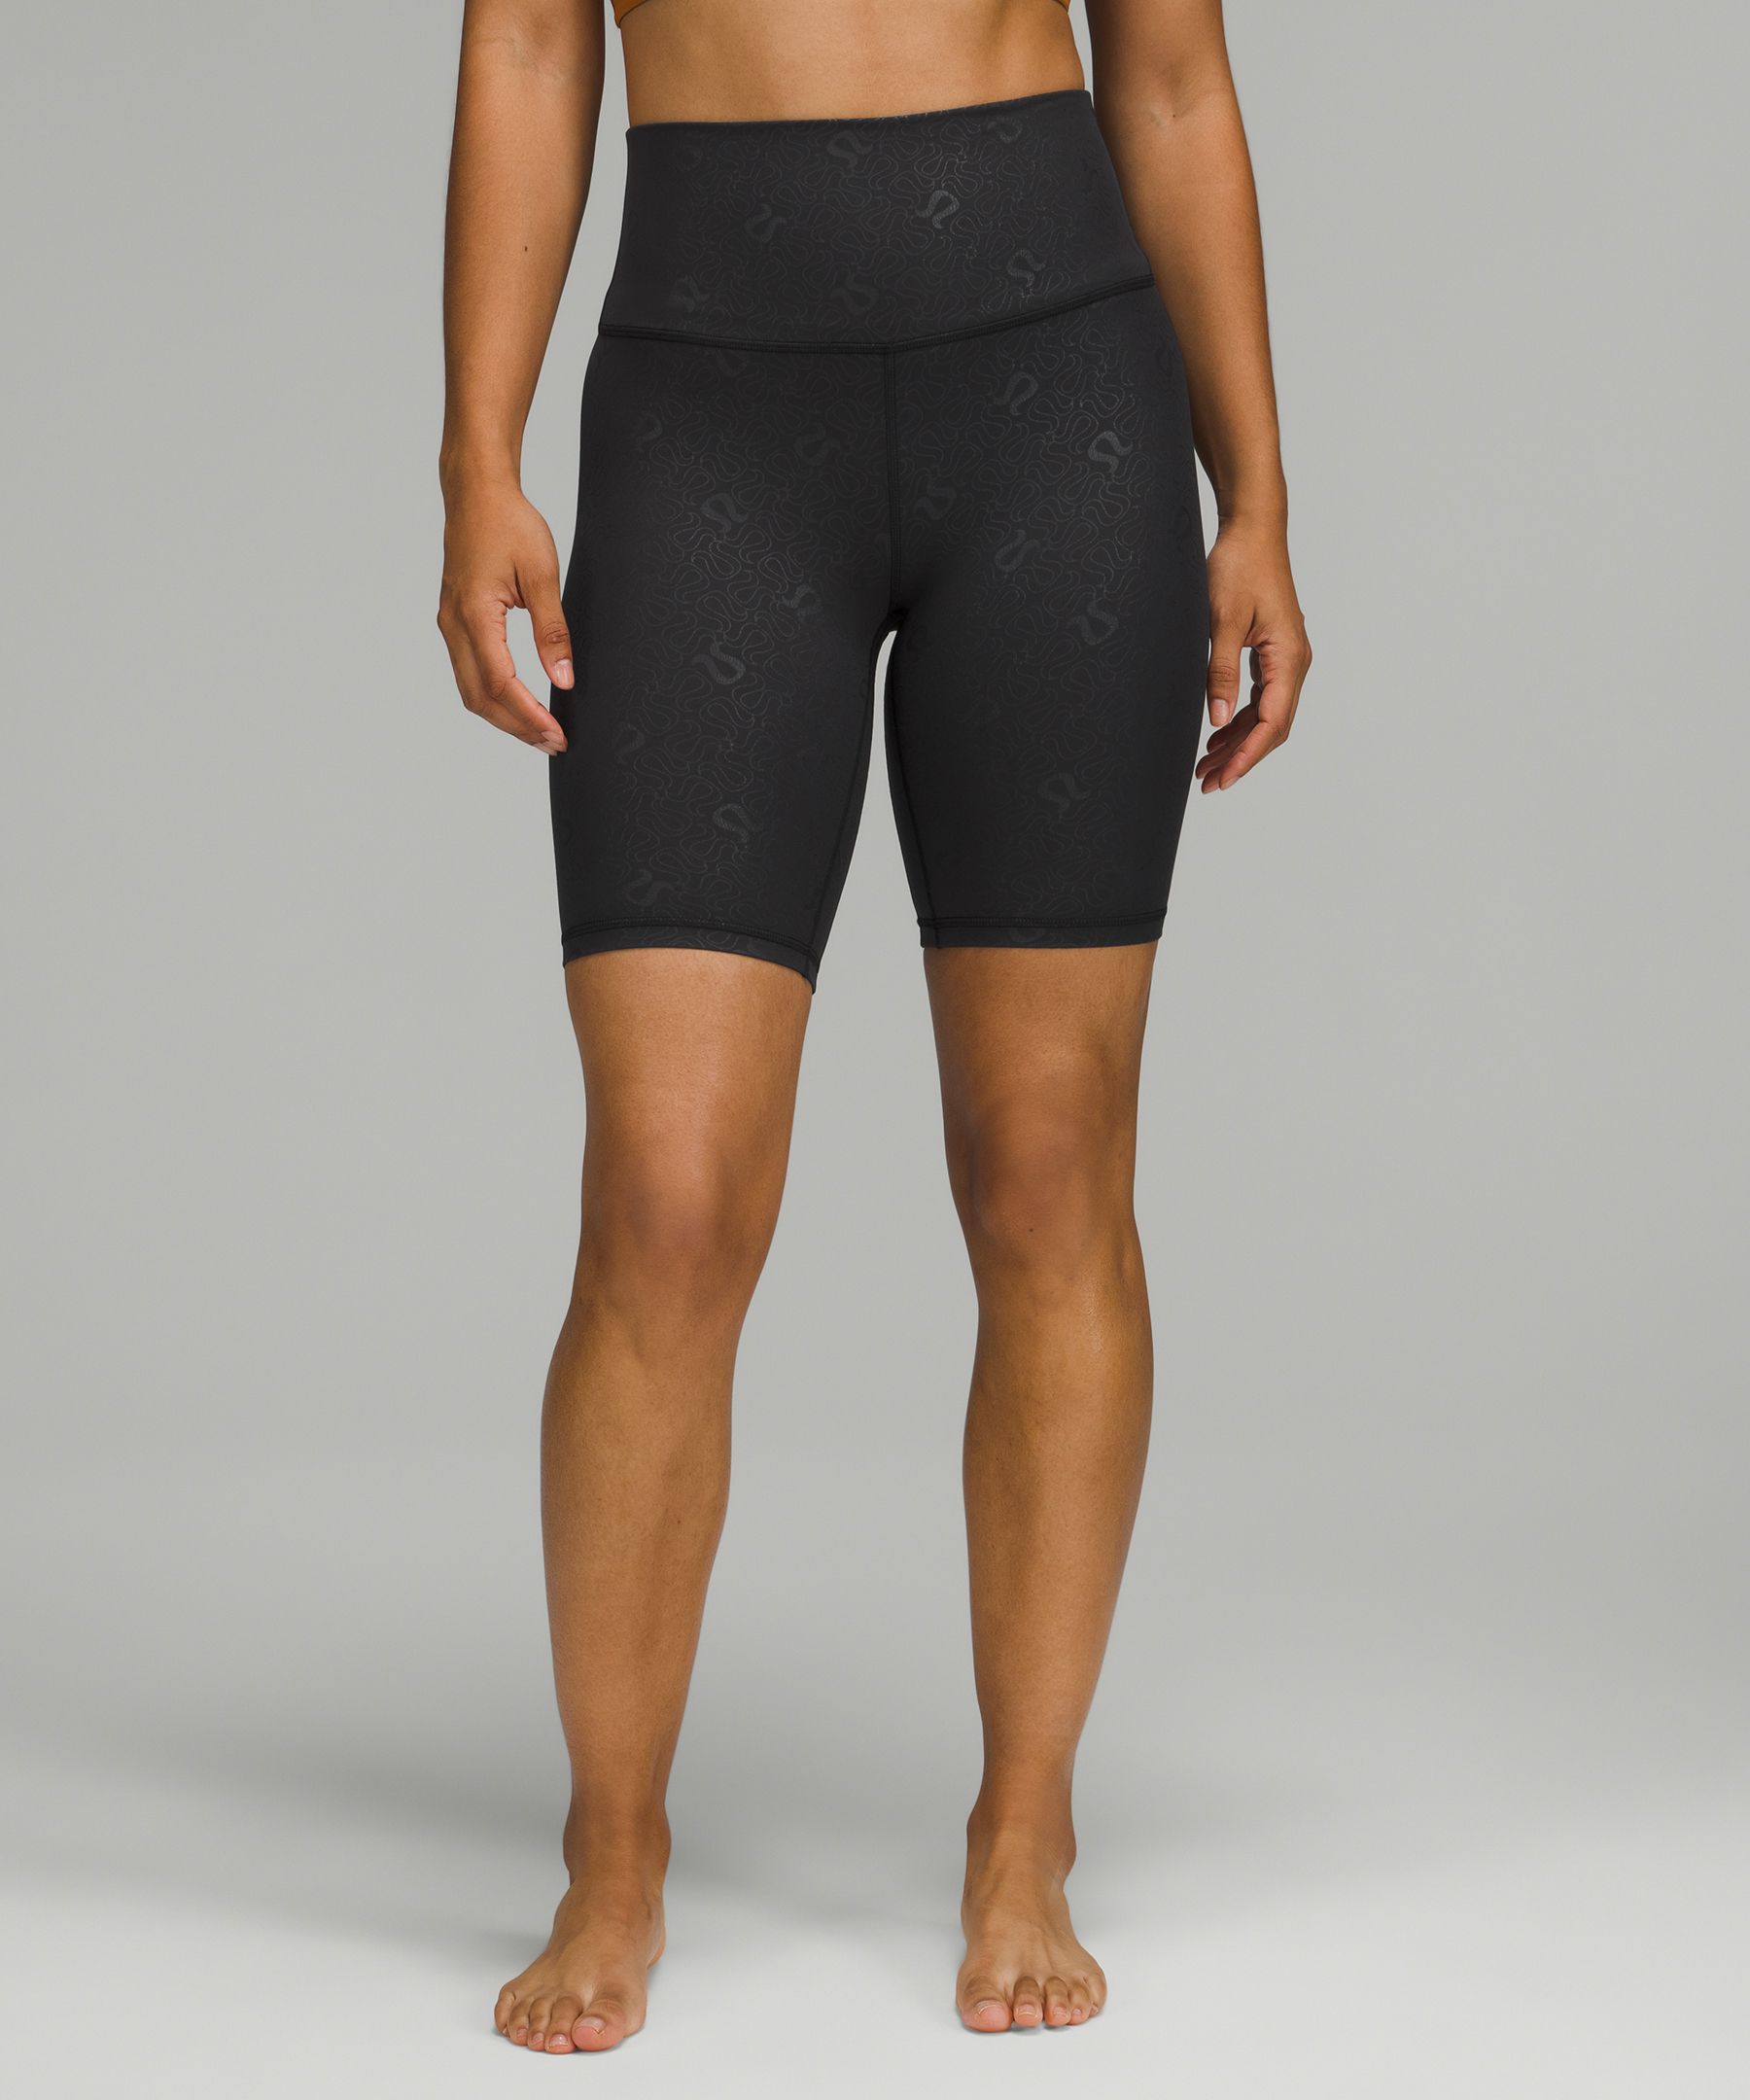 Lululemon Align™ High-rise Shorts 8" In Black